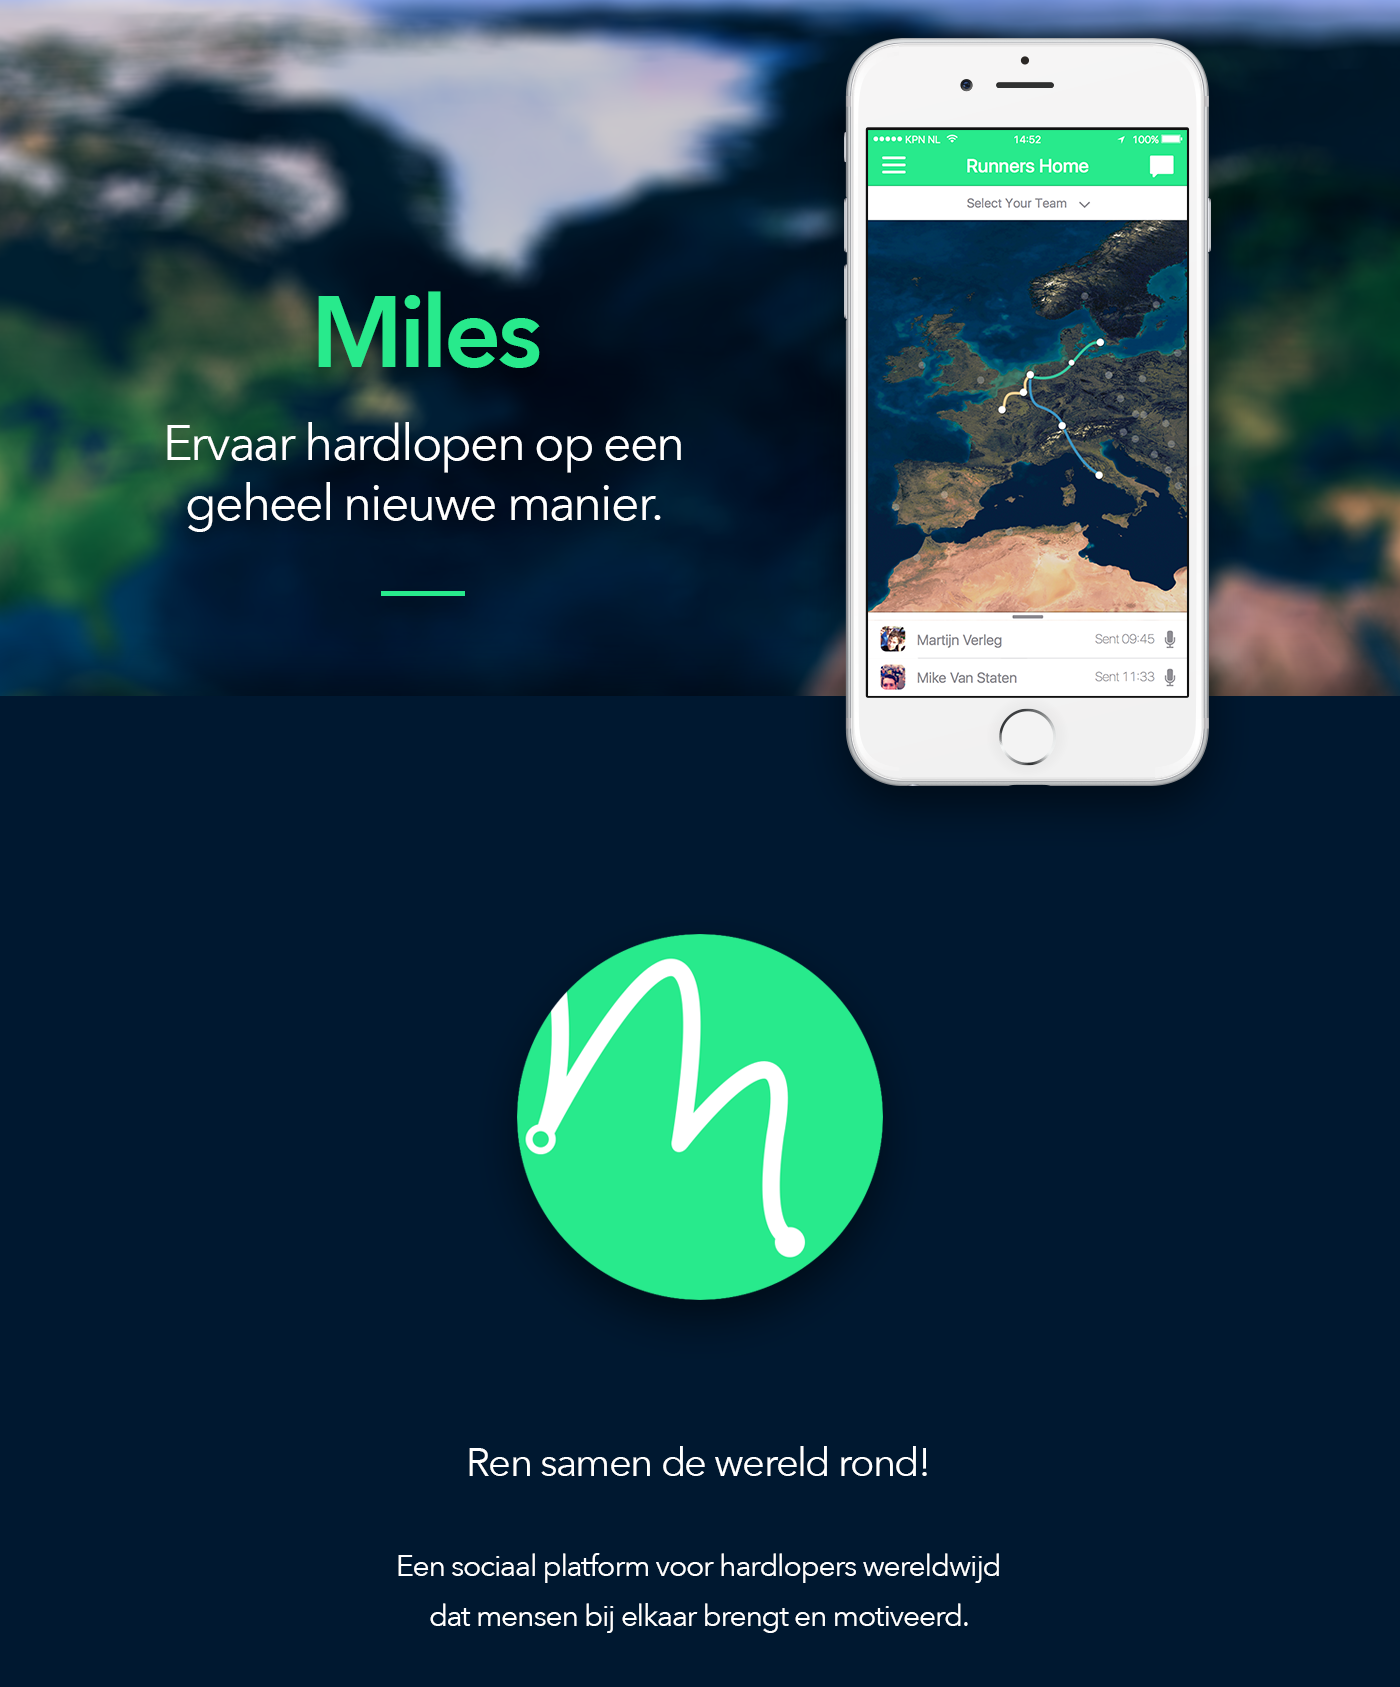 miles app ios running Hardlopen